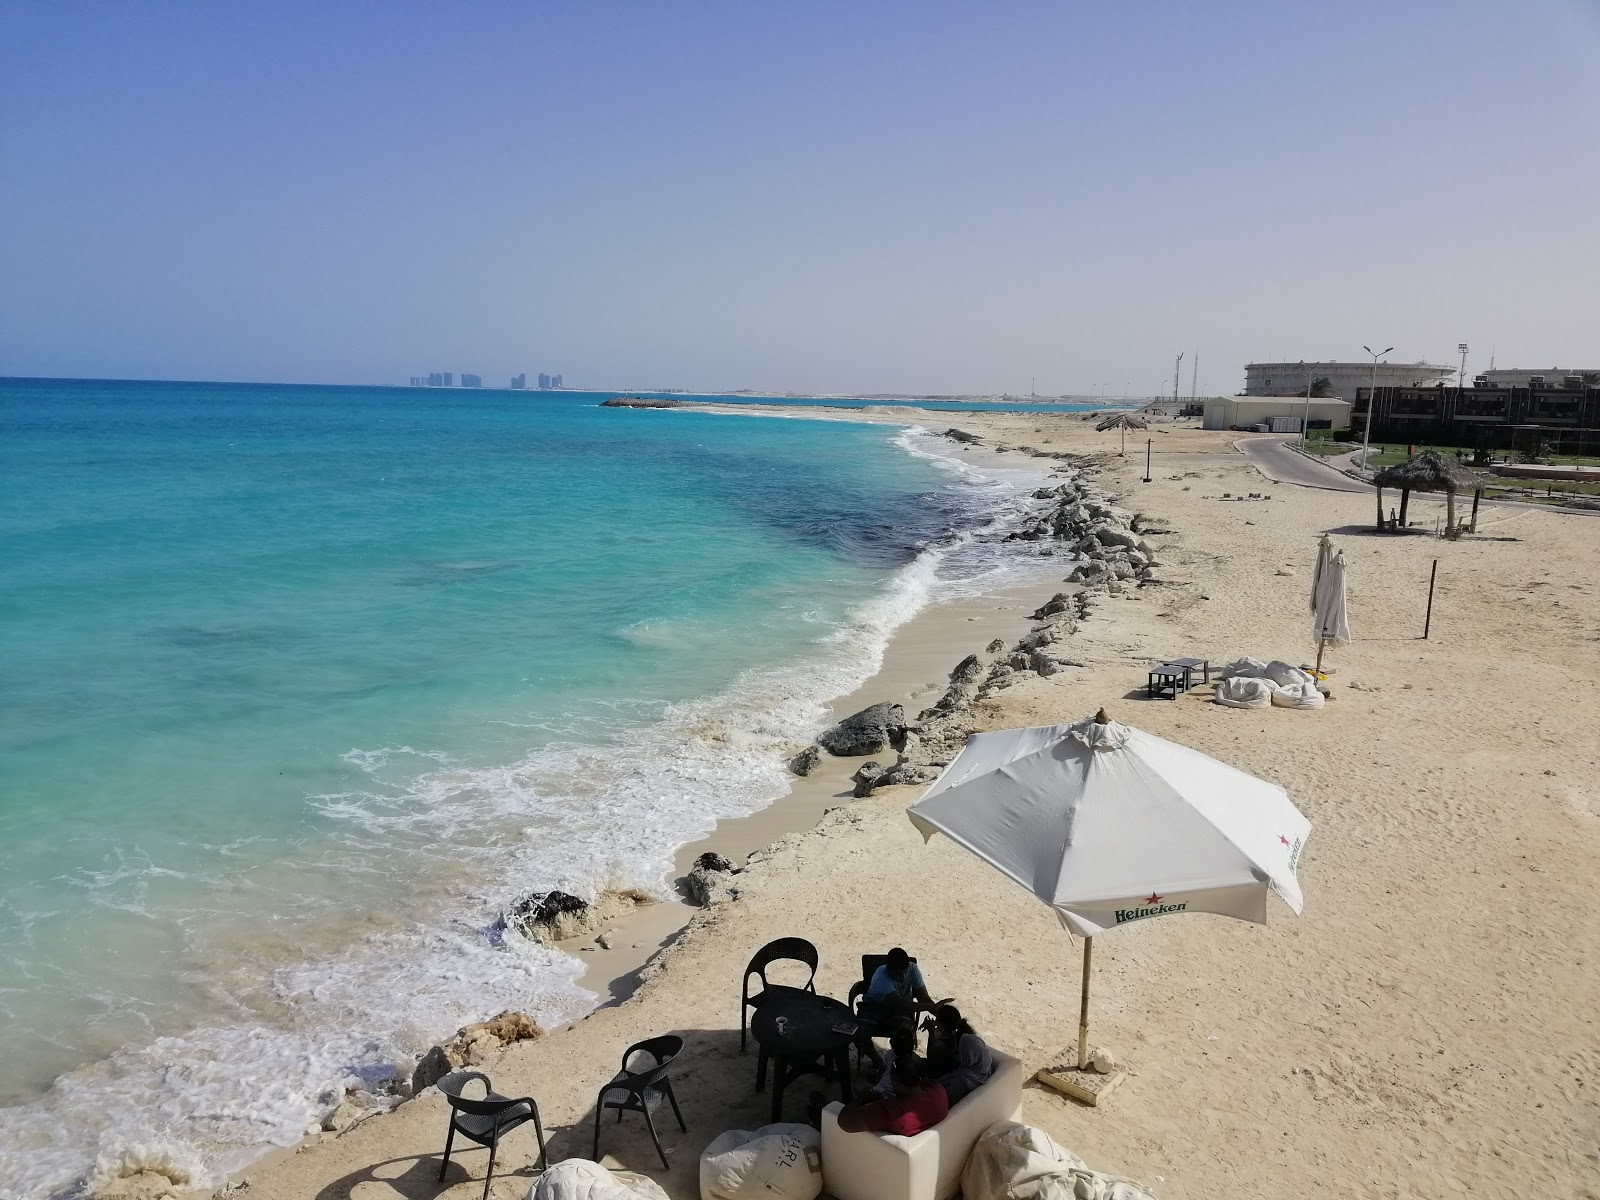 Fotografie cu Al-Hamra Beach cu o suprafață de nisip alb